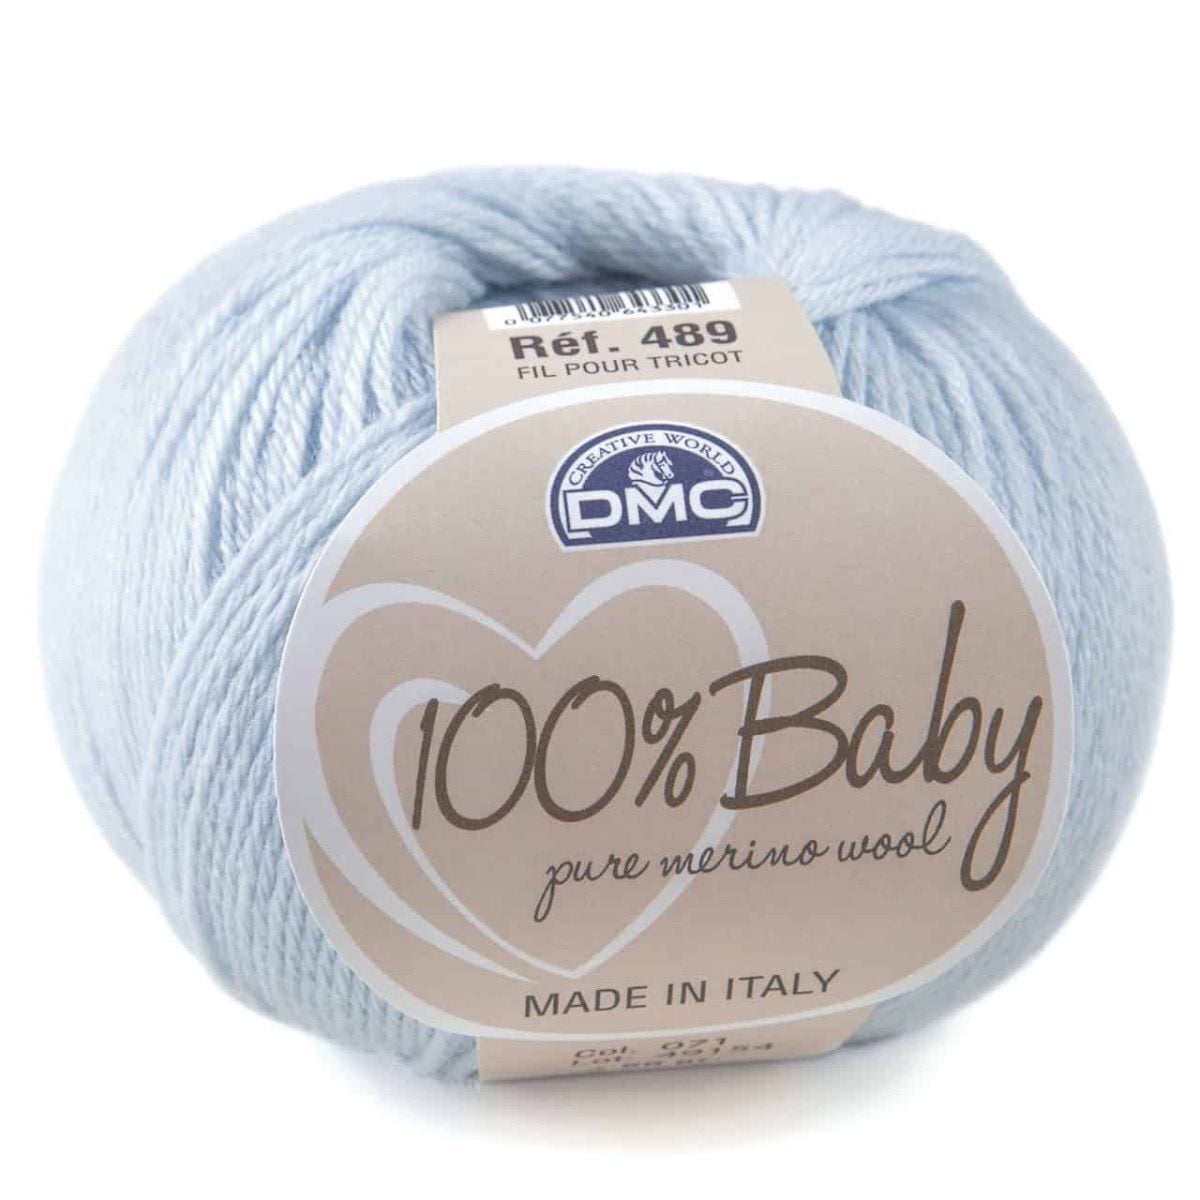 Copertina neonato 100% lana merino